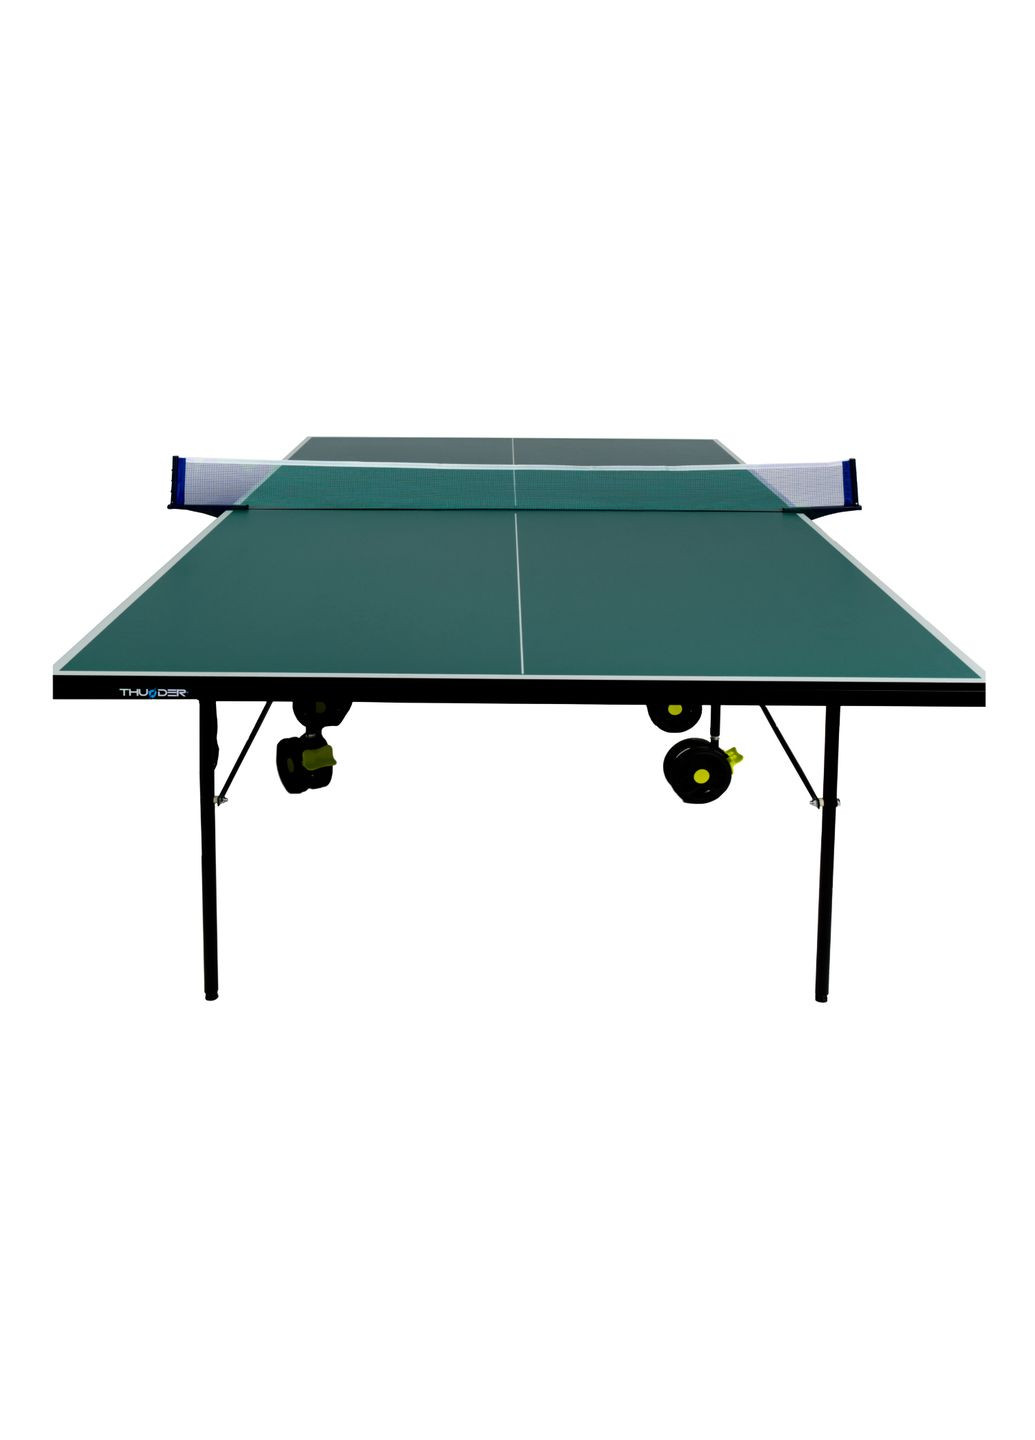 Стіл для настільного тенісу Indoor Join-15 Green Thunder join-15-green (275334176)